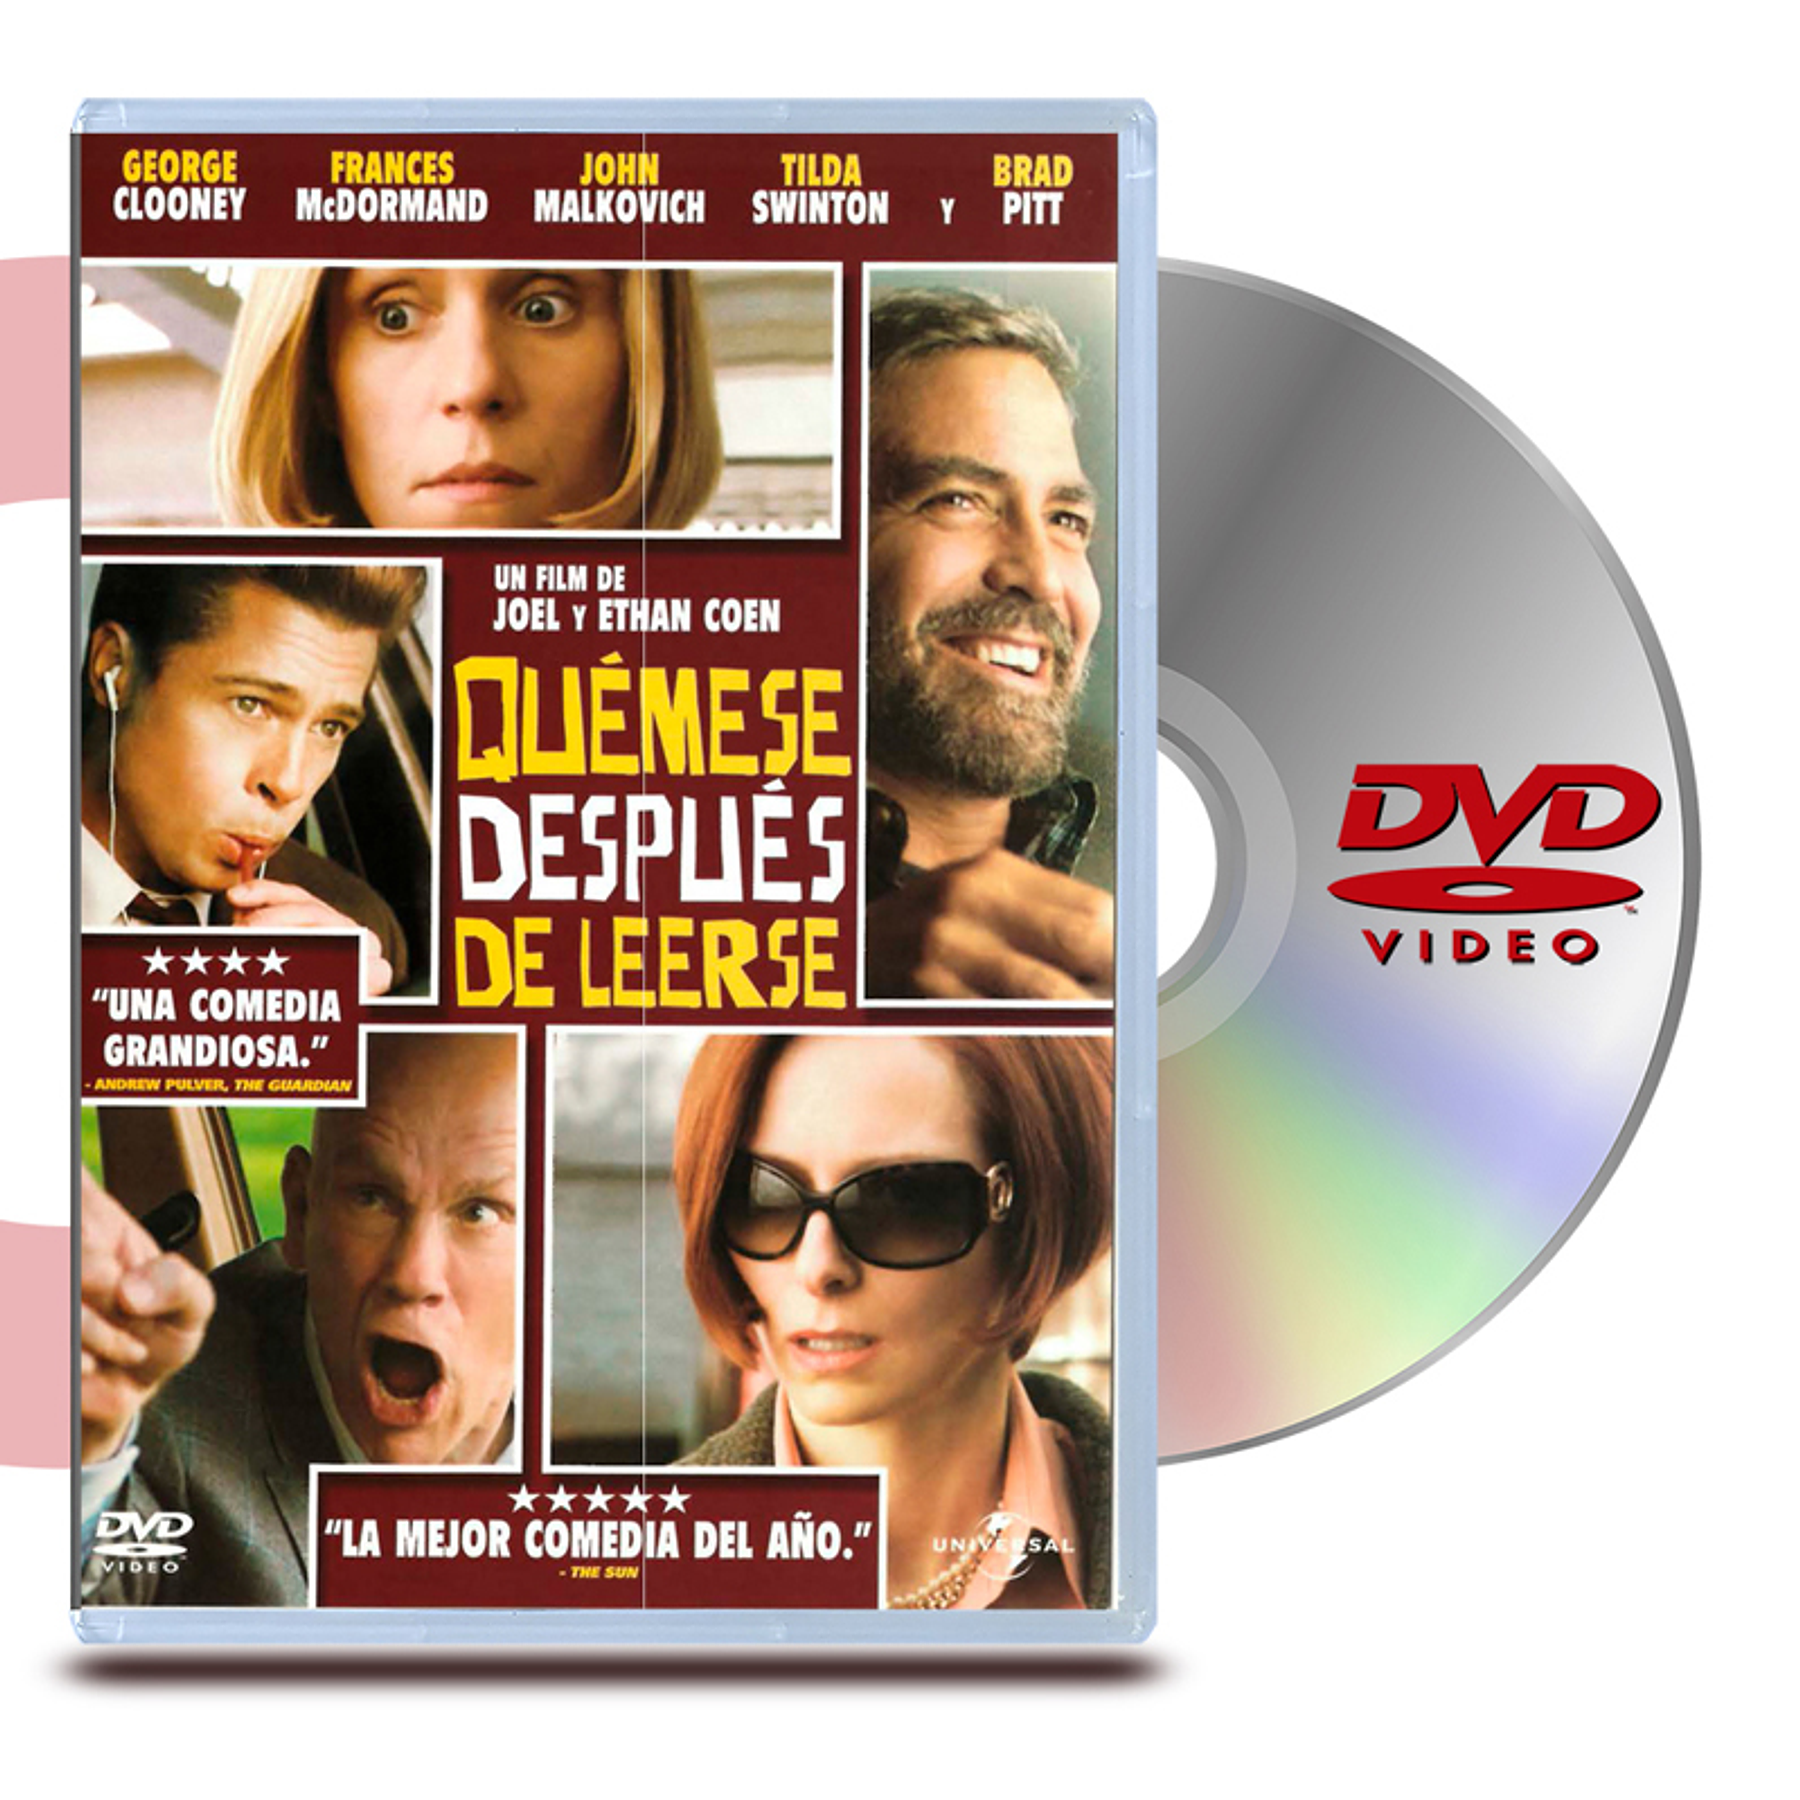 DVD QUEMESE DESPUES DE LEERSE